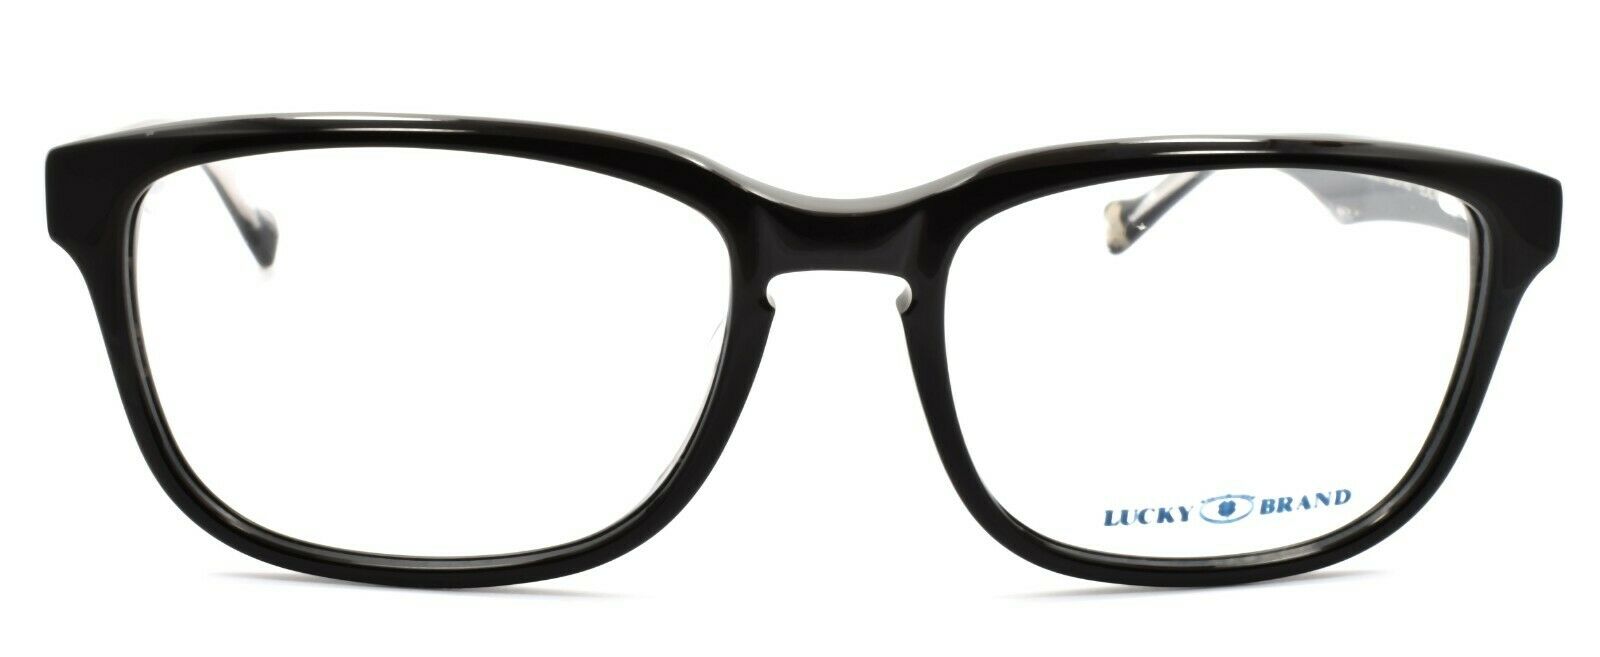 2-LUCKY BRAND Folklore Men's Eyeglasses Frames 52-17-140 Black + CASE-751286223873-IKSpecs